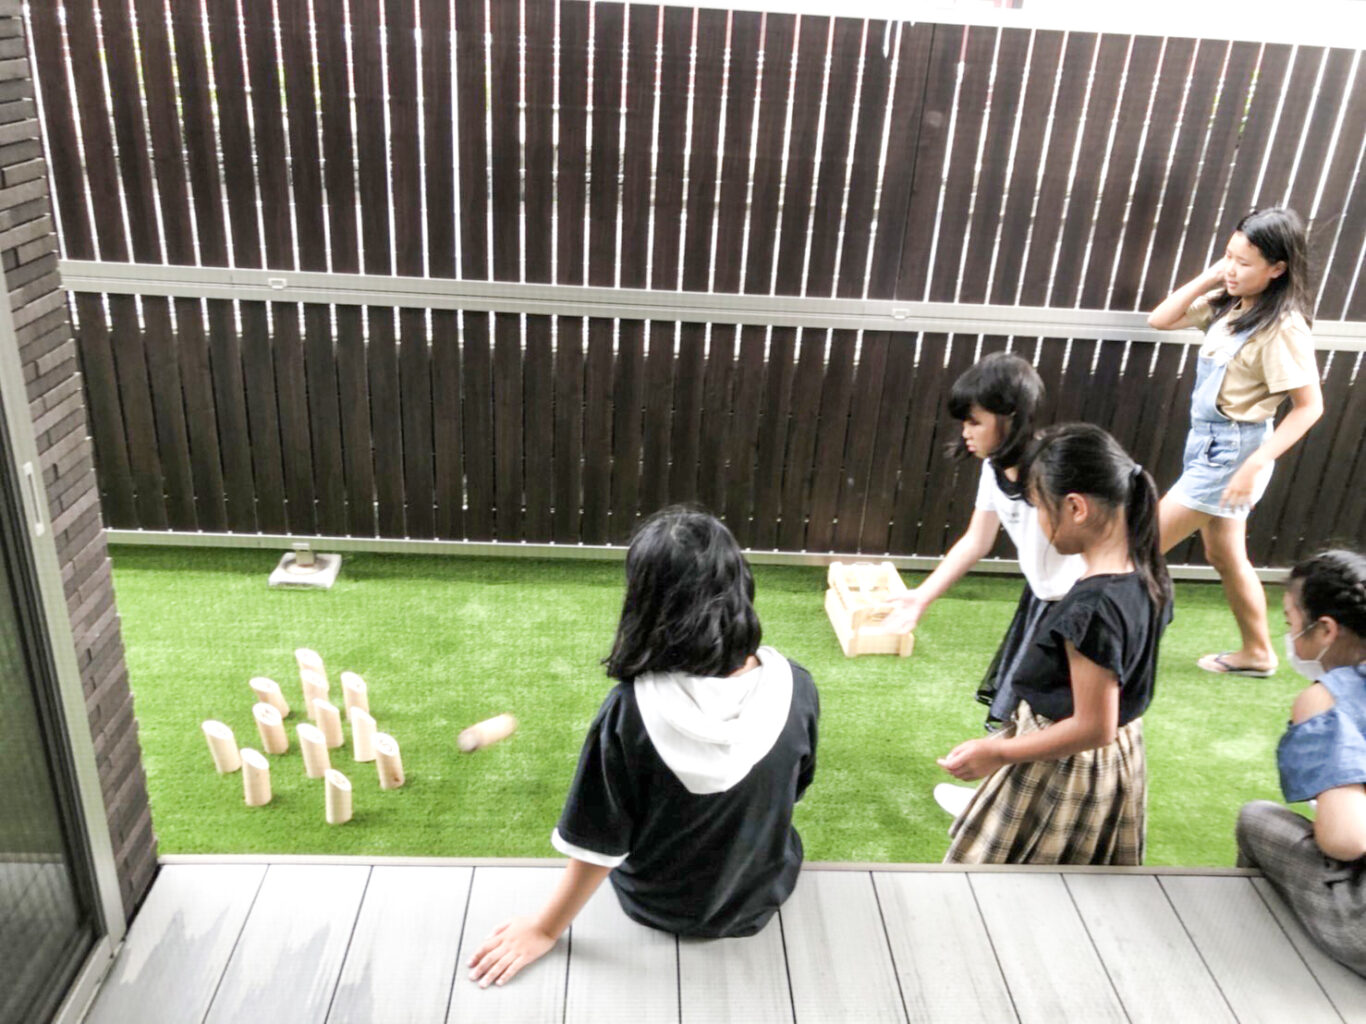 ウッドデッキに座って人工芝を敷いた庭で遊ぶ子ら